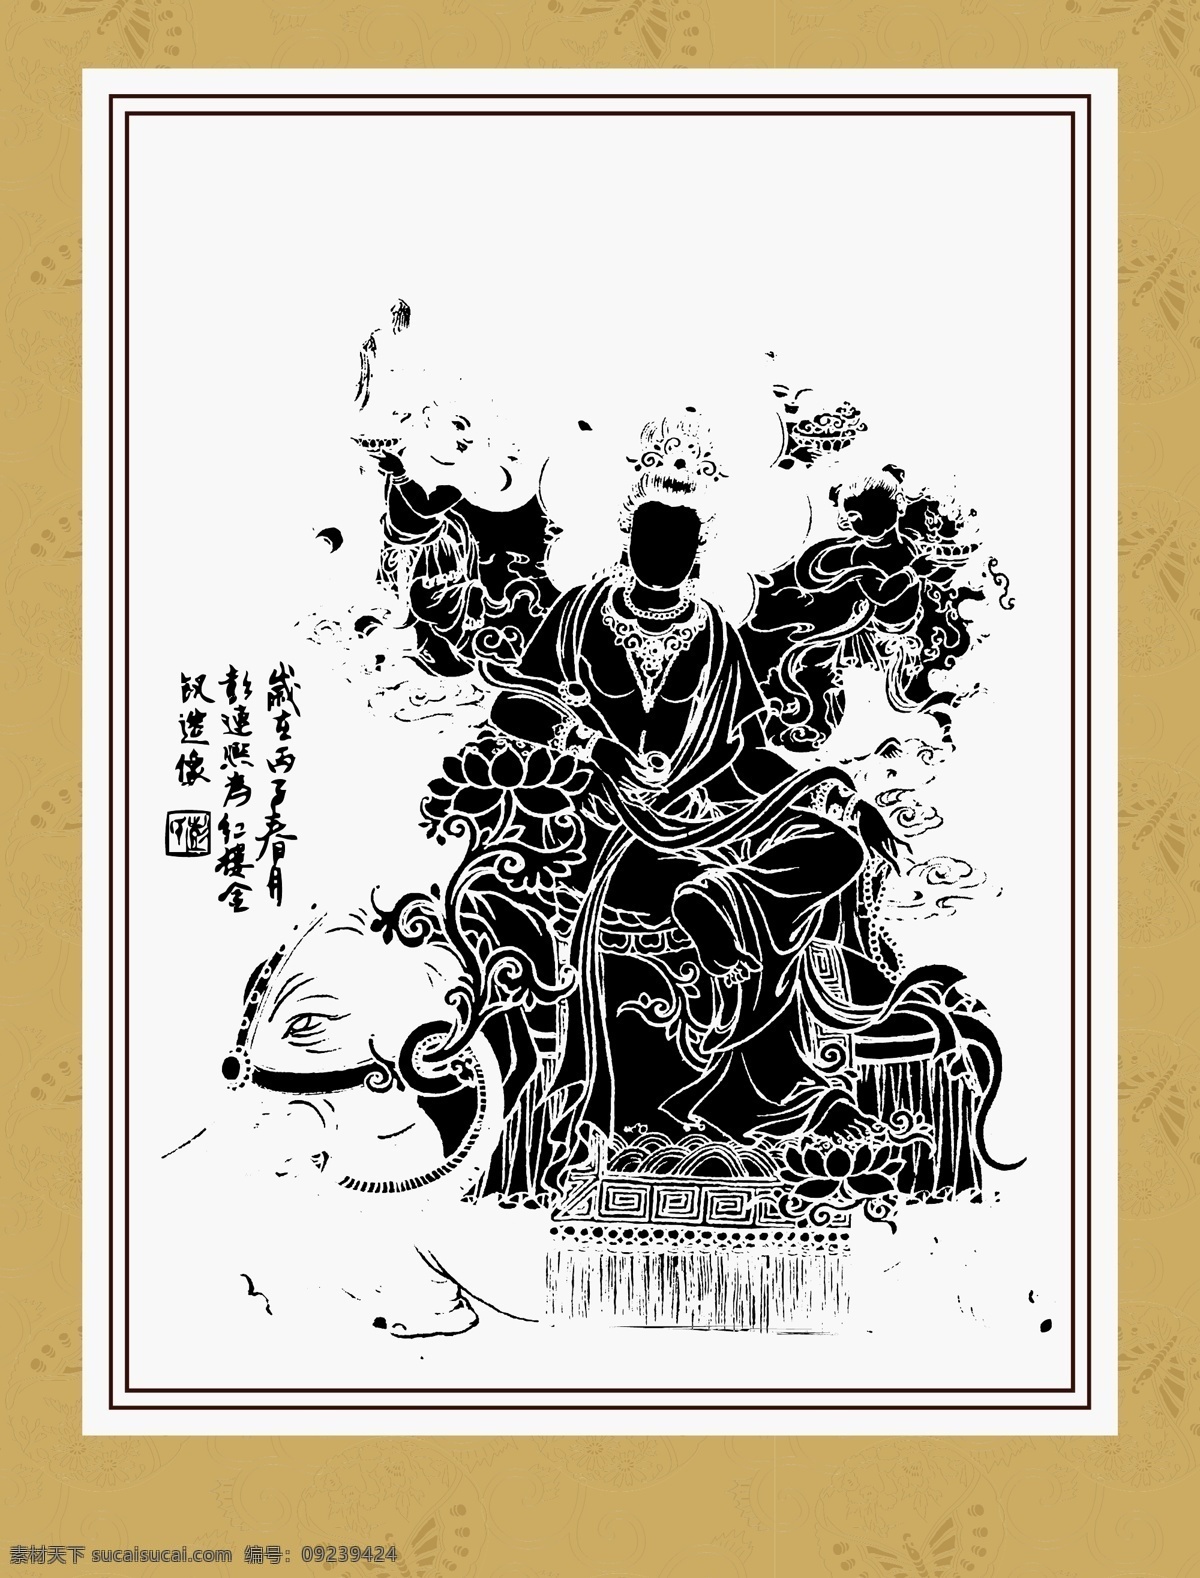 鬼狐仙怪 地藏菩萨 线描 白描 绘画 工笔 国画 人物 神话传说 传统纹样 传统文化 文化艺术 矢量